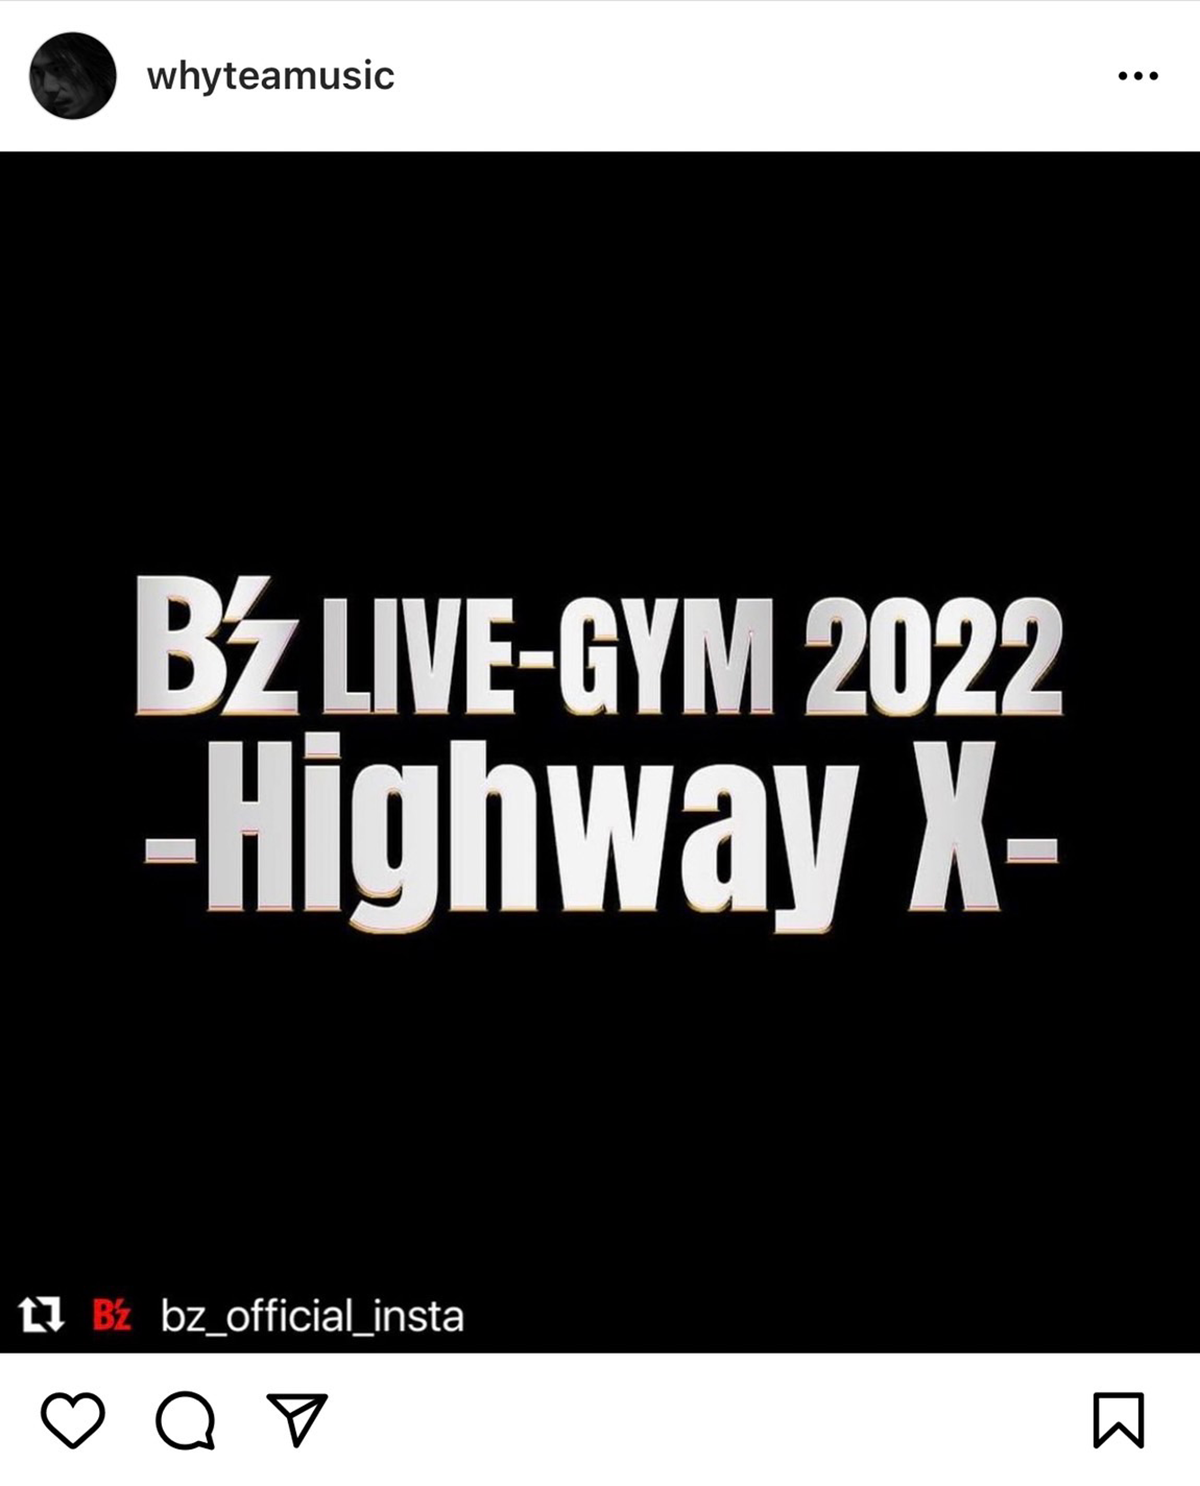 Yukihide "YT" Takiyamaが『B'z LIVE-GYM 2022 -Highway X-』に参加することを報告するInstagramのリポスト画像